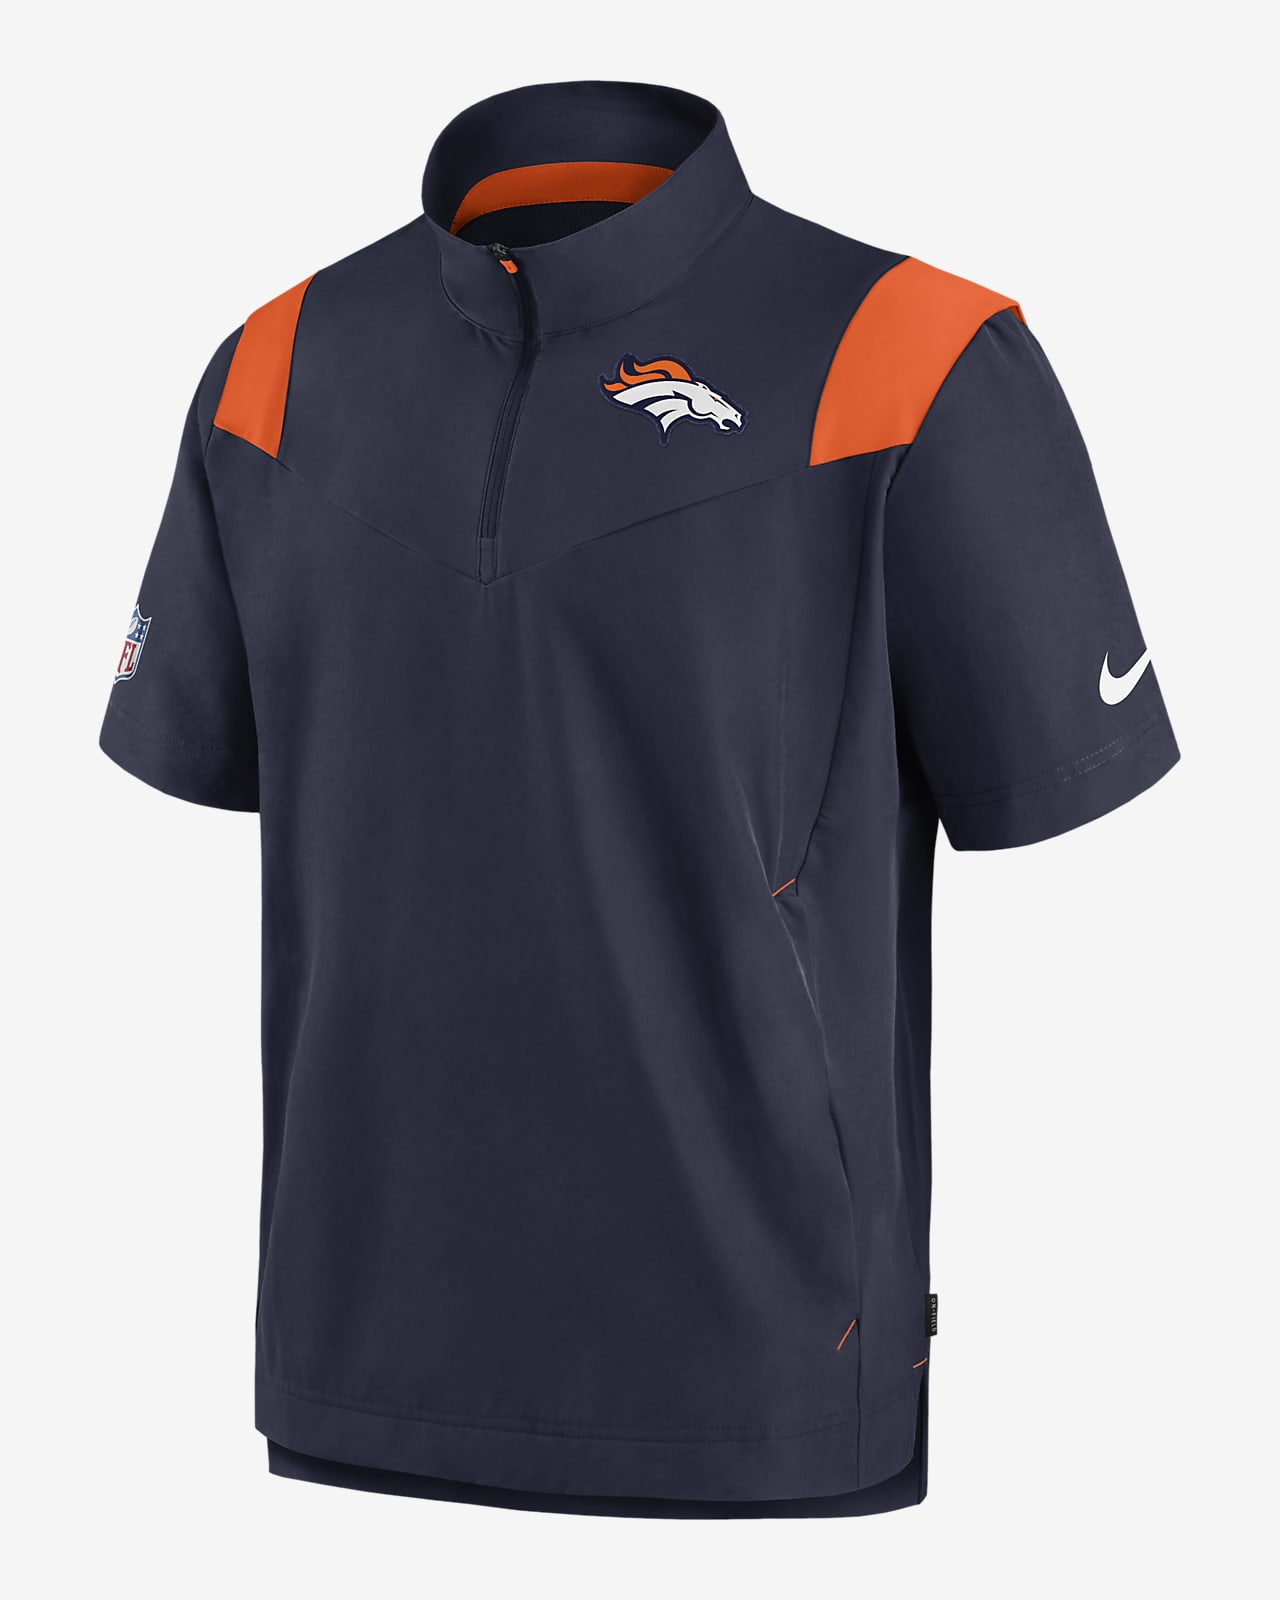 Nike Men's Denver Broncos Sideline Coaches Short Sleeve Jacket - Navy - L (Large)